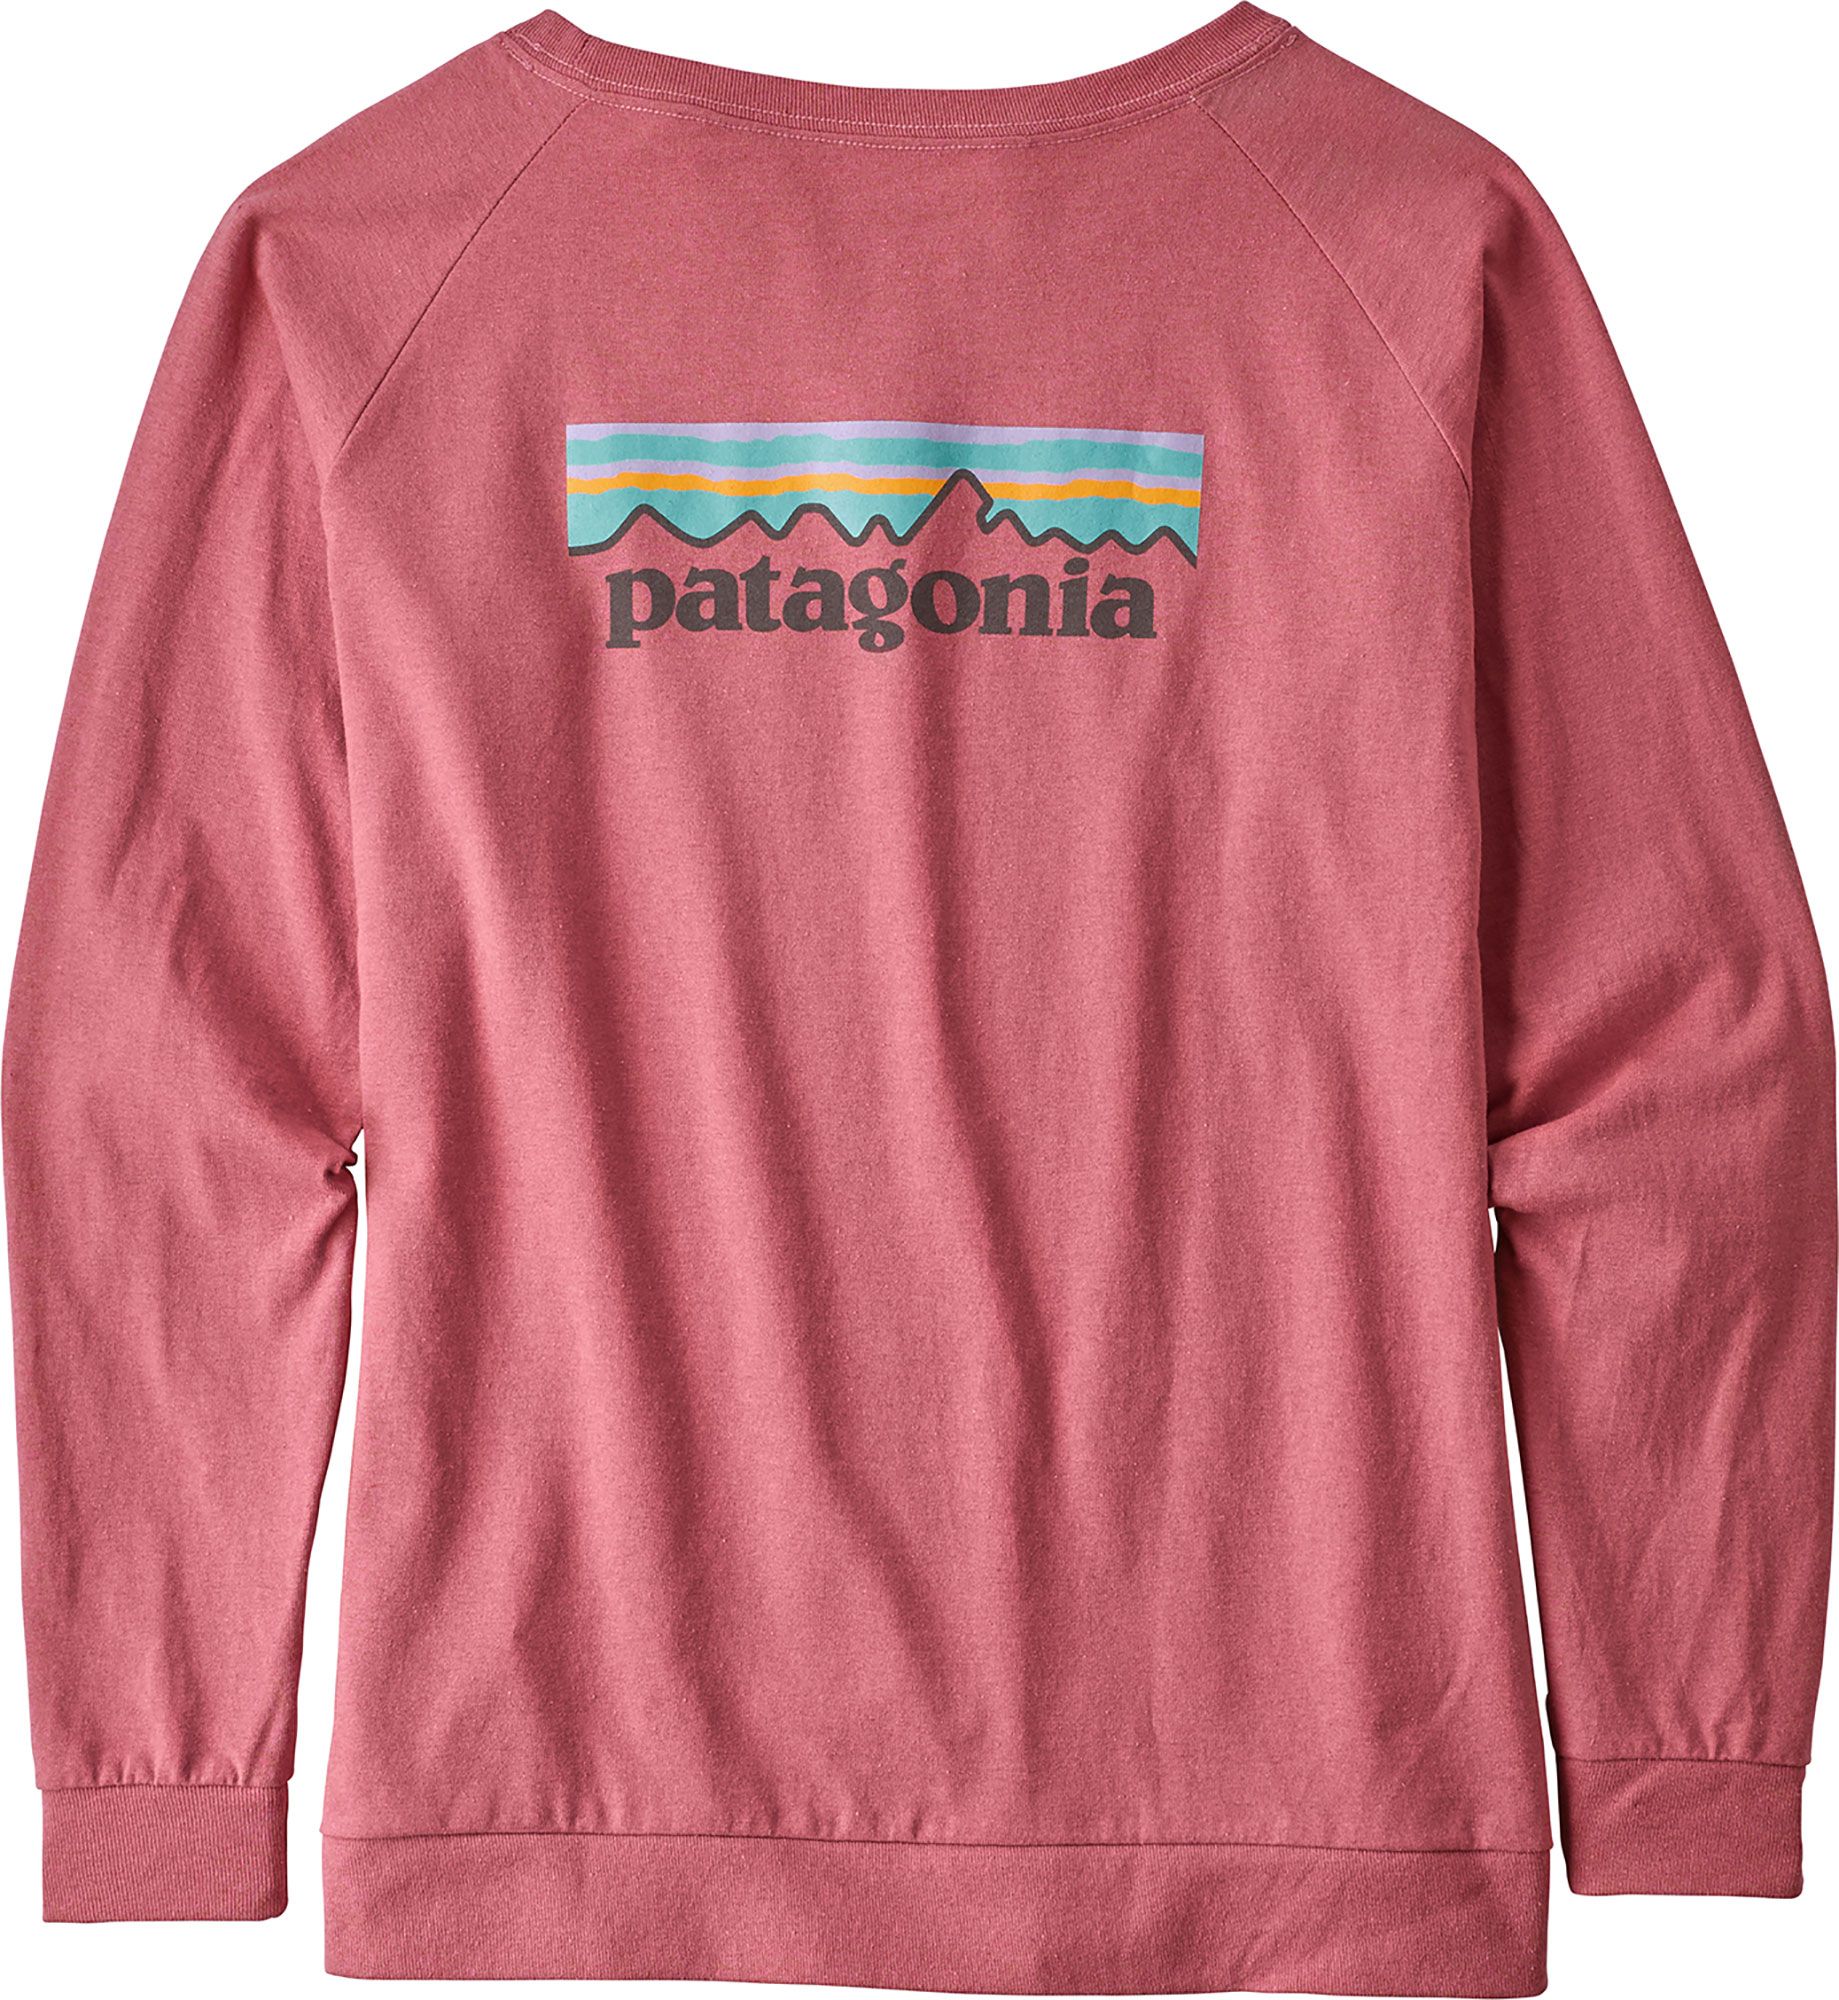 Patagonia Women’s Pastel P-6 Logo Responsibili-Tee Long Sleeve Shirt